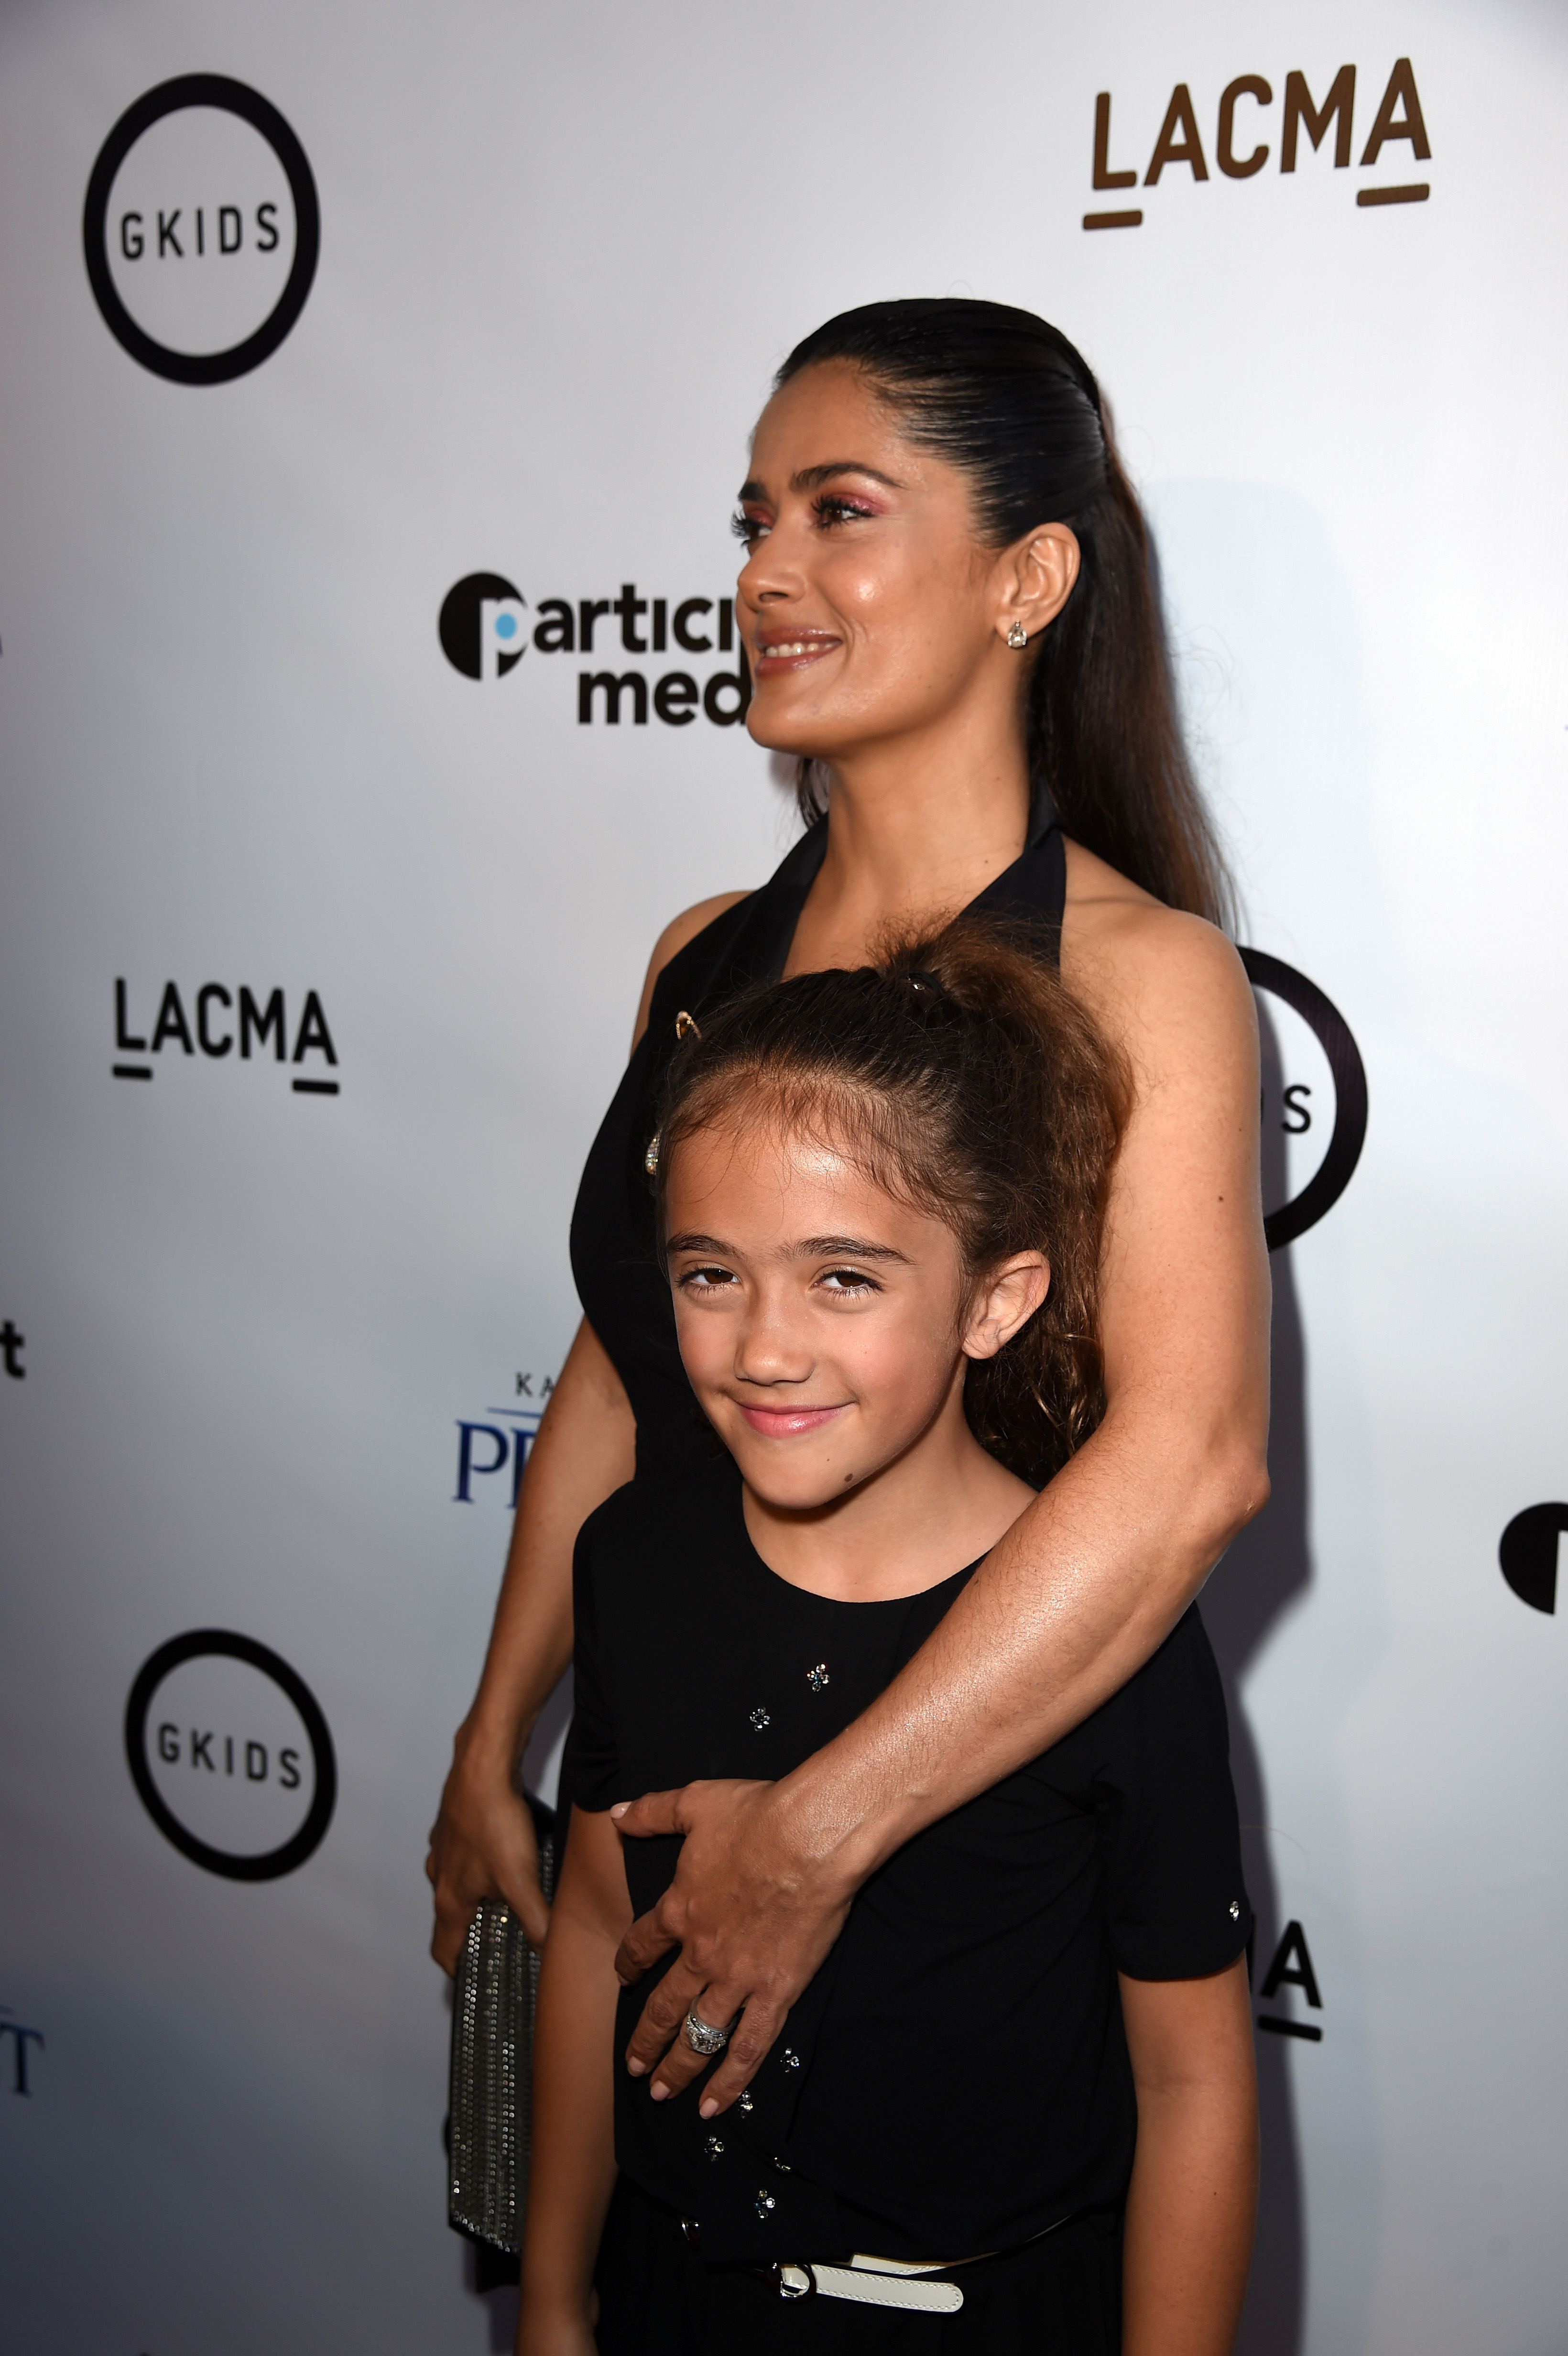 Salma Hayek Pinault et sa fille Valentina Paloma Pinault assistent à la projection du film de GKIDS "Le Prophète" au Bing Theatre at LACMA le 29 juillet 2015 à Los Angeles, Californie | Source : Getty Images